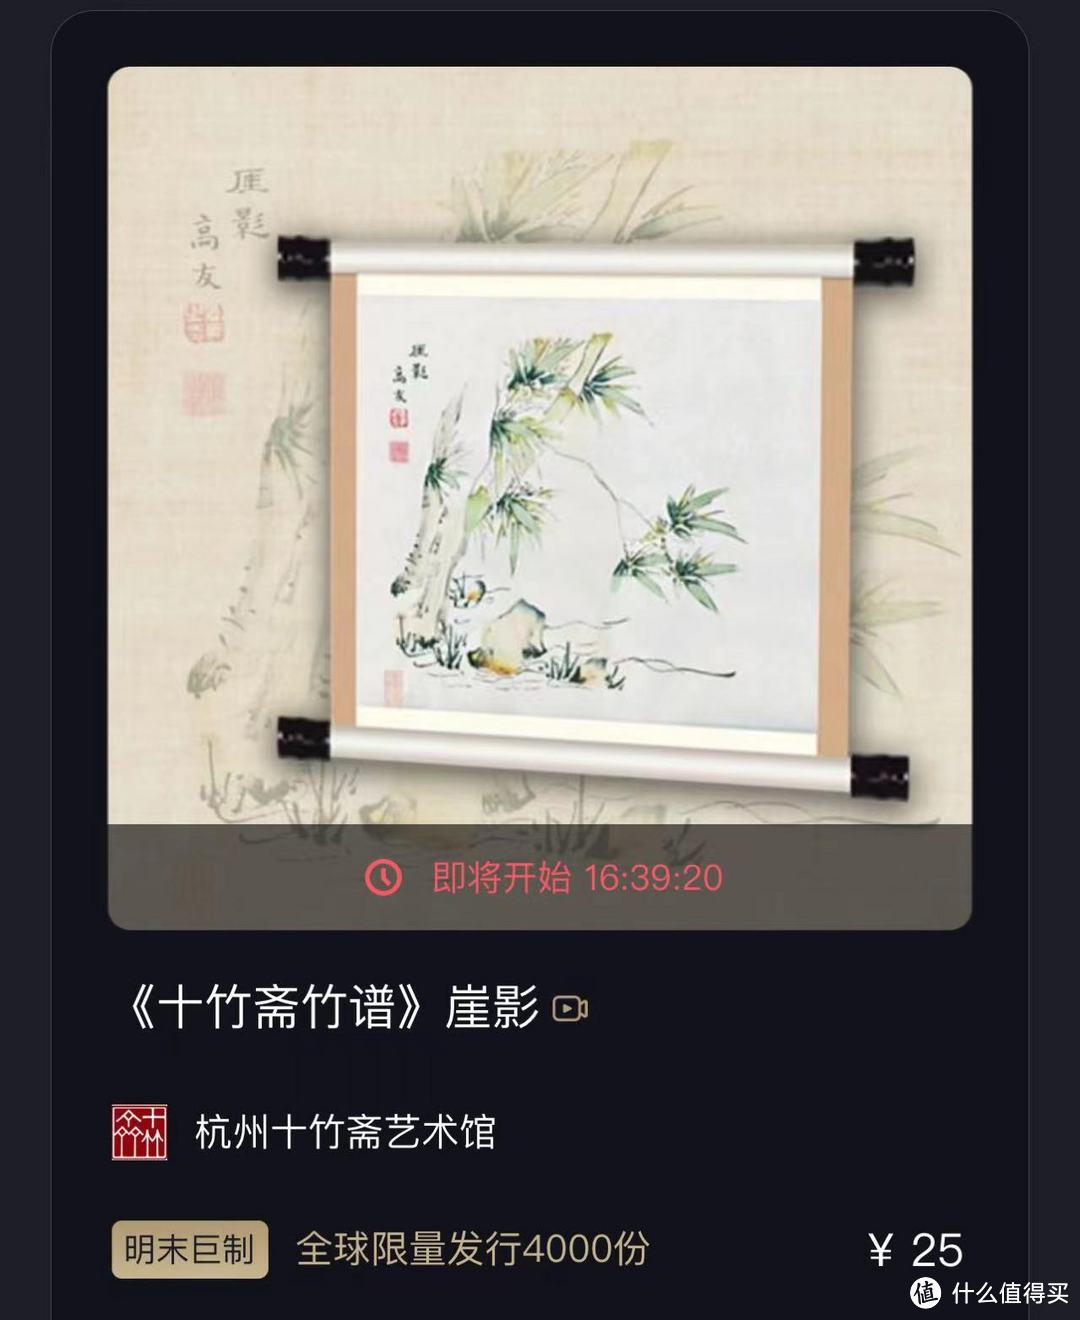 6月22日国内大平台NFT发行预告丨京杭大运河戏曲名家名段百年黑胶典藏上线